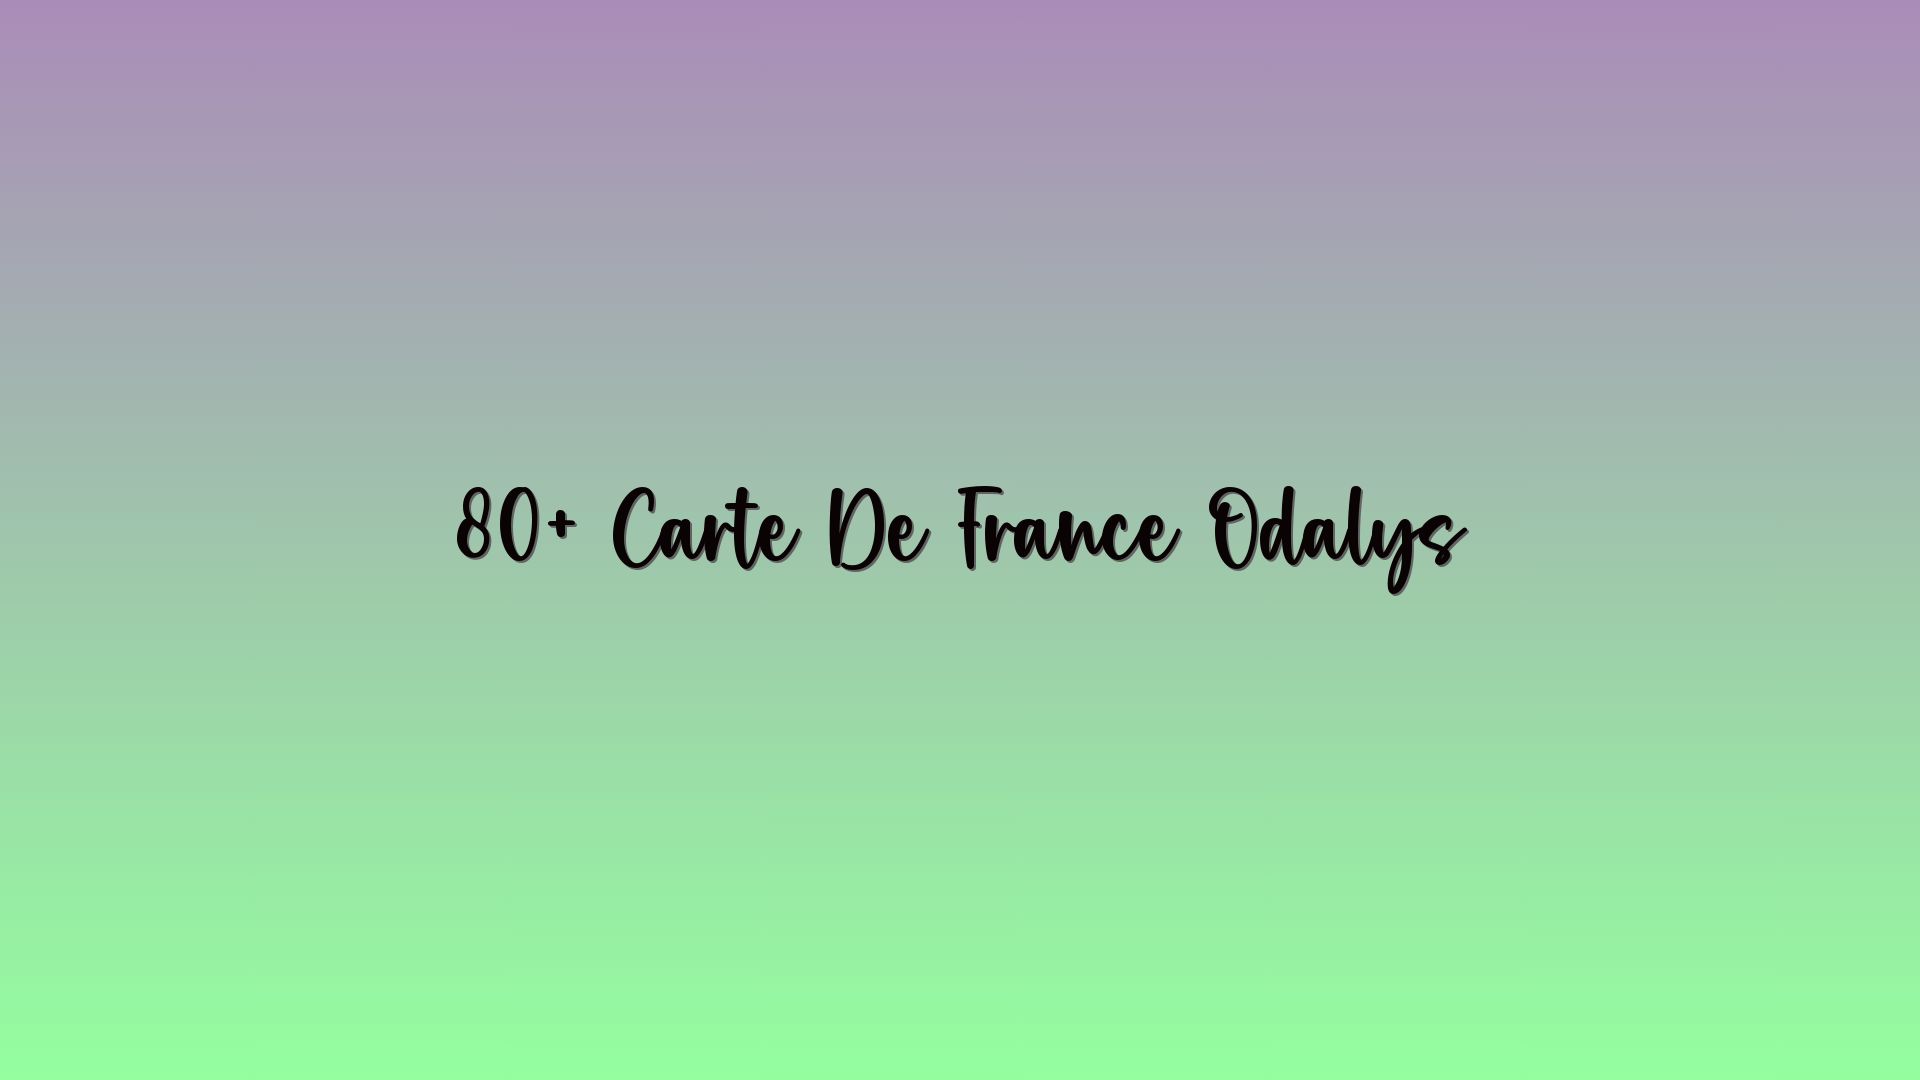 80+ Carte De France Odalys